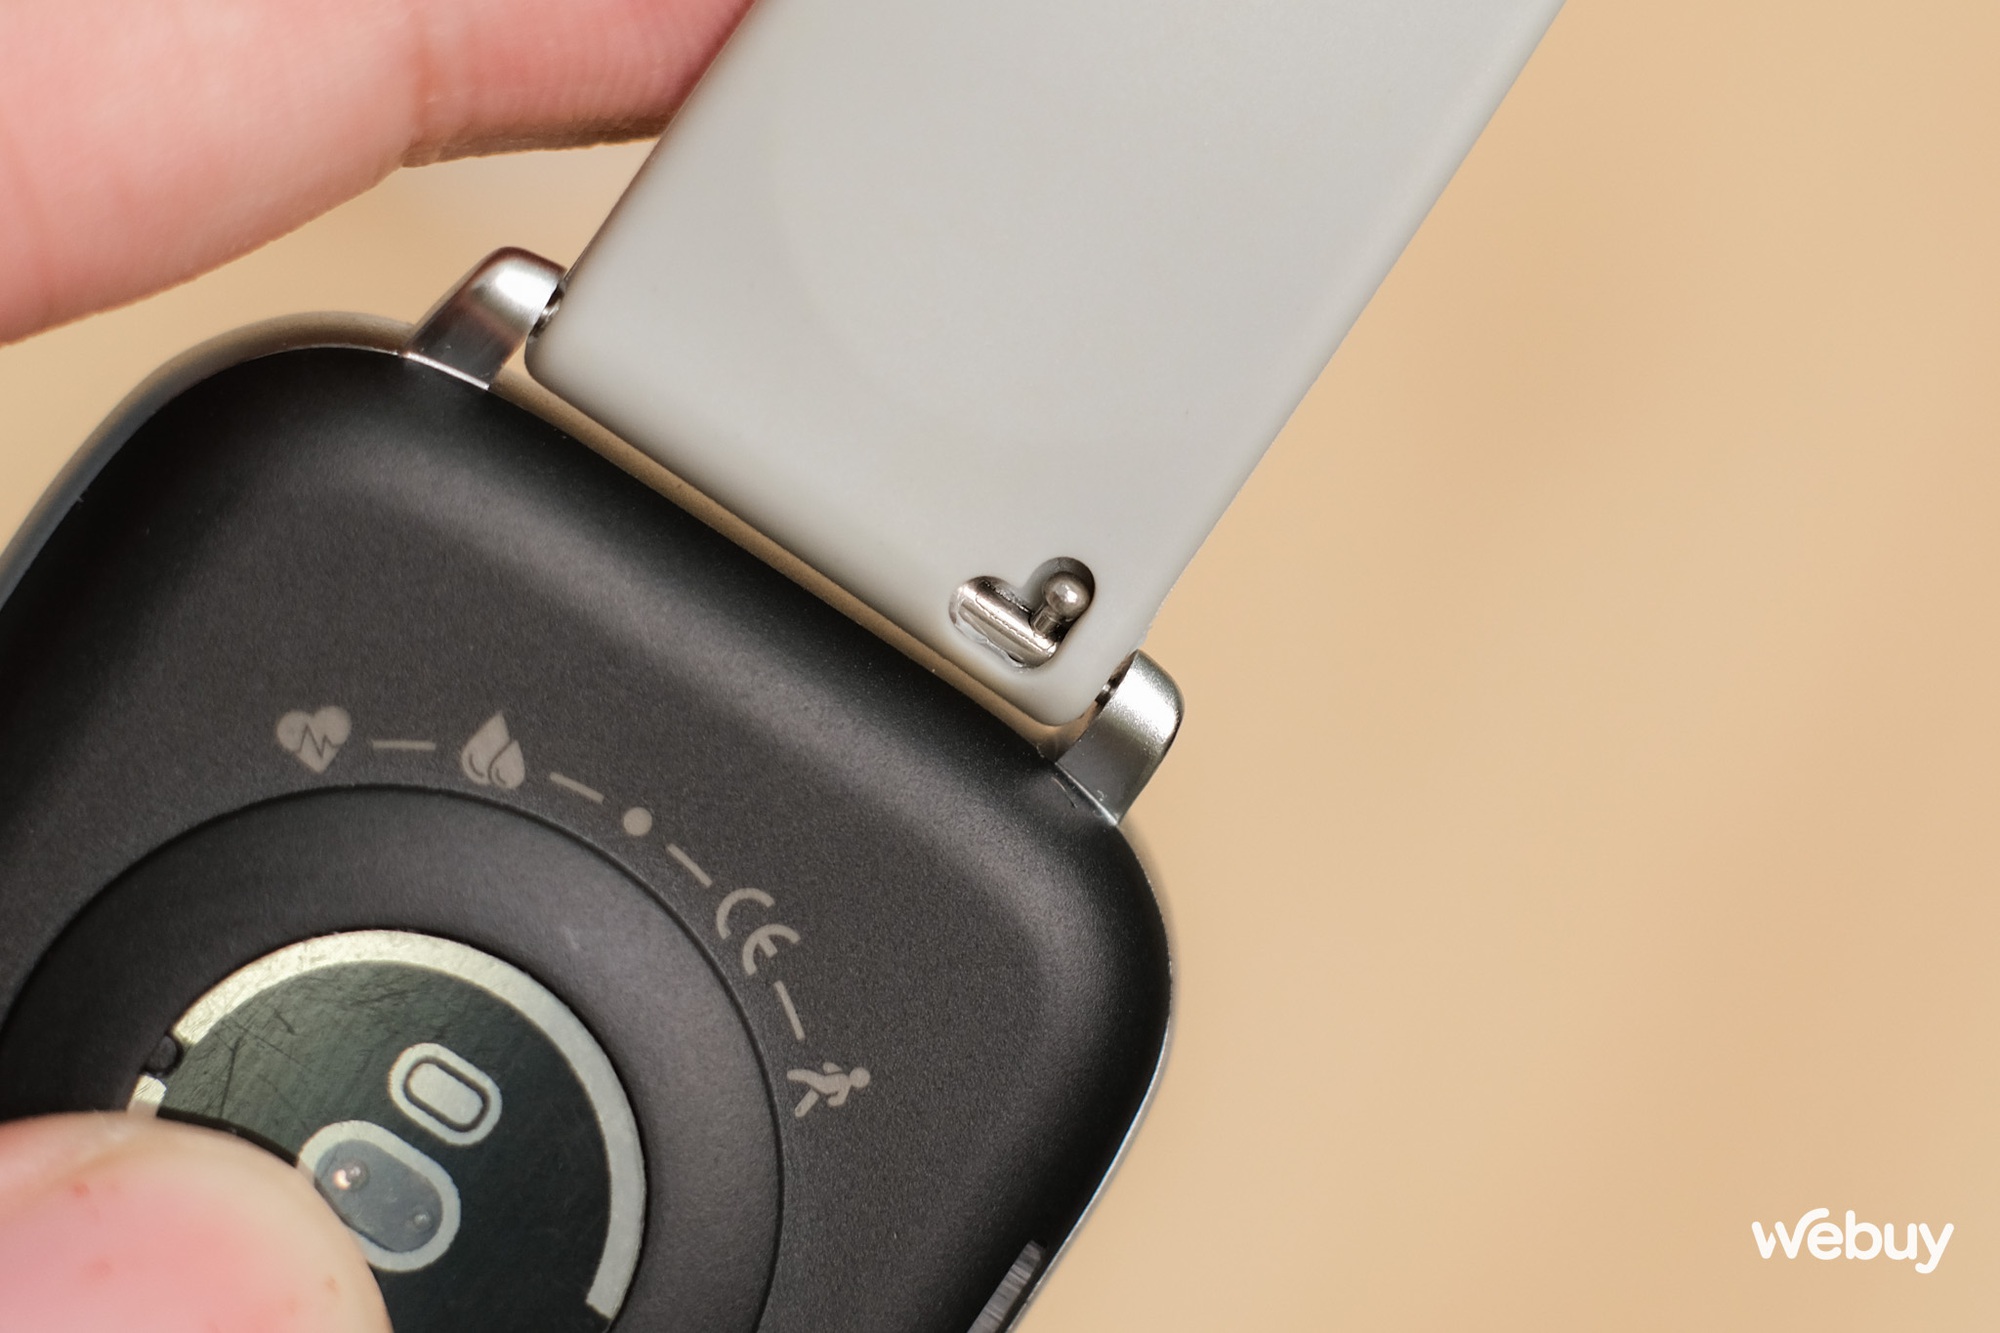 Smartwatch chính hãng giá 690,000 đồng có khung viền nhôm, loa và mic thoại, pin 7 ngày - Ảnh 12.